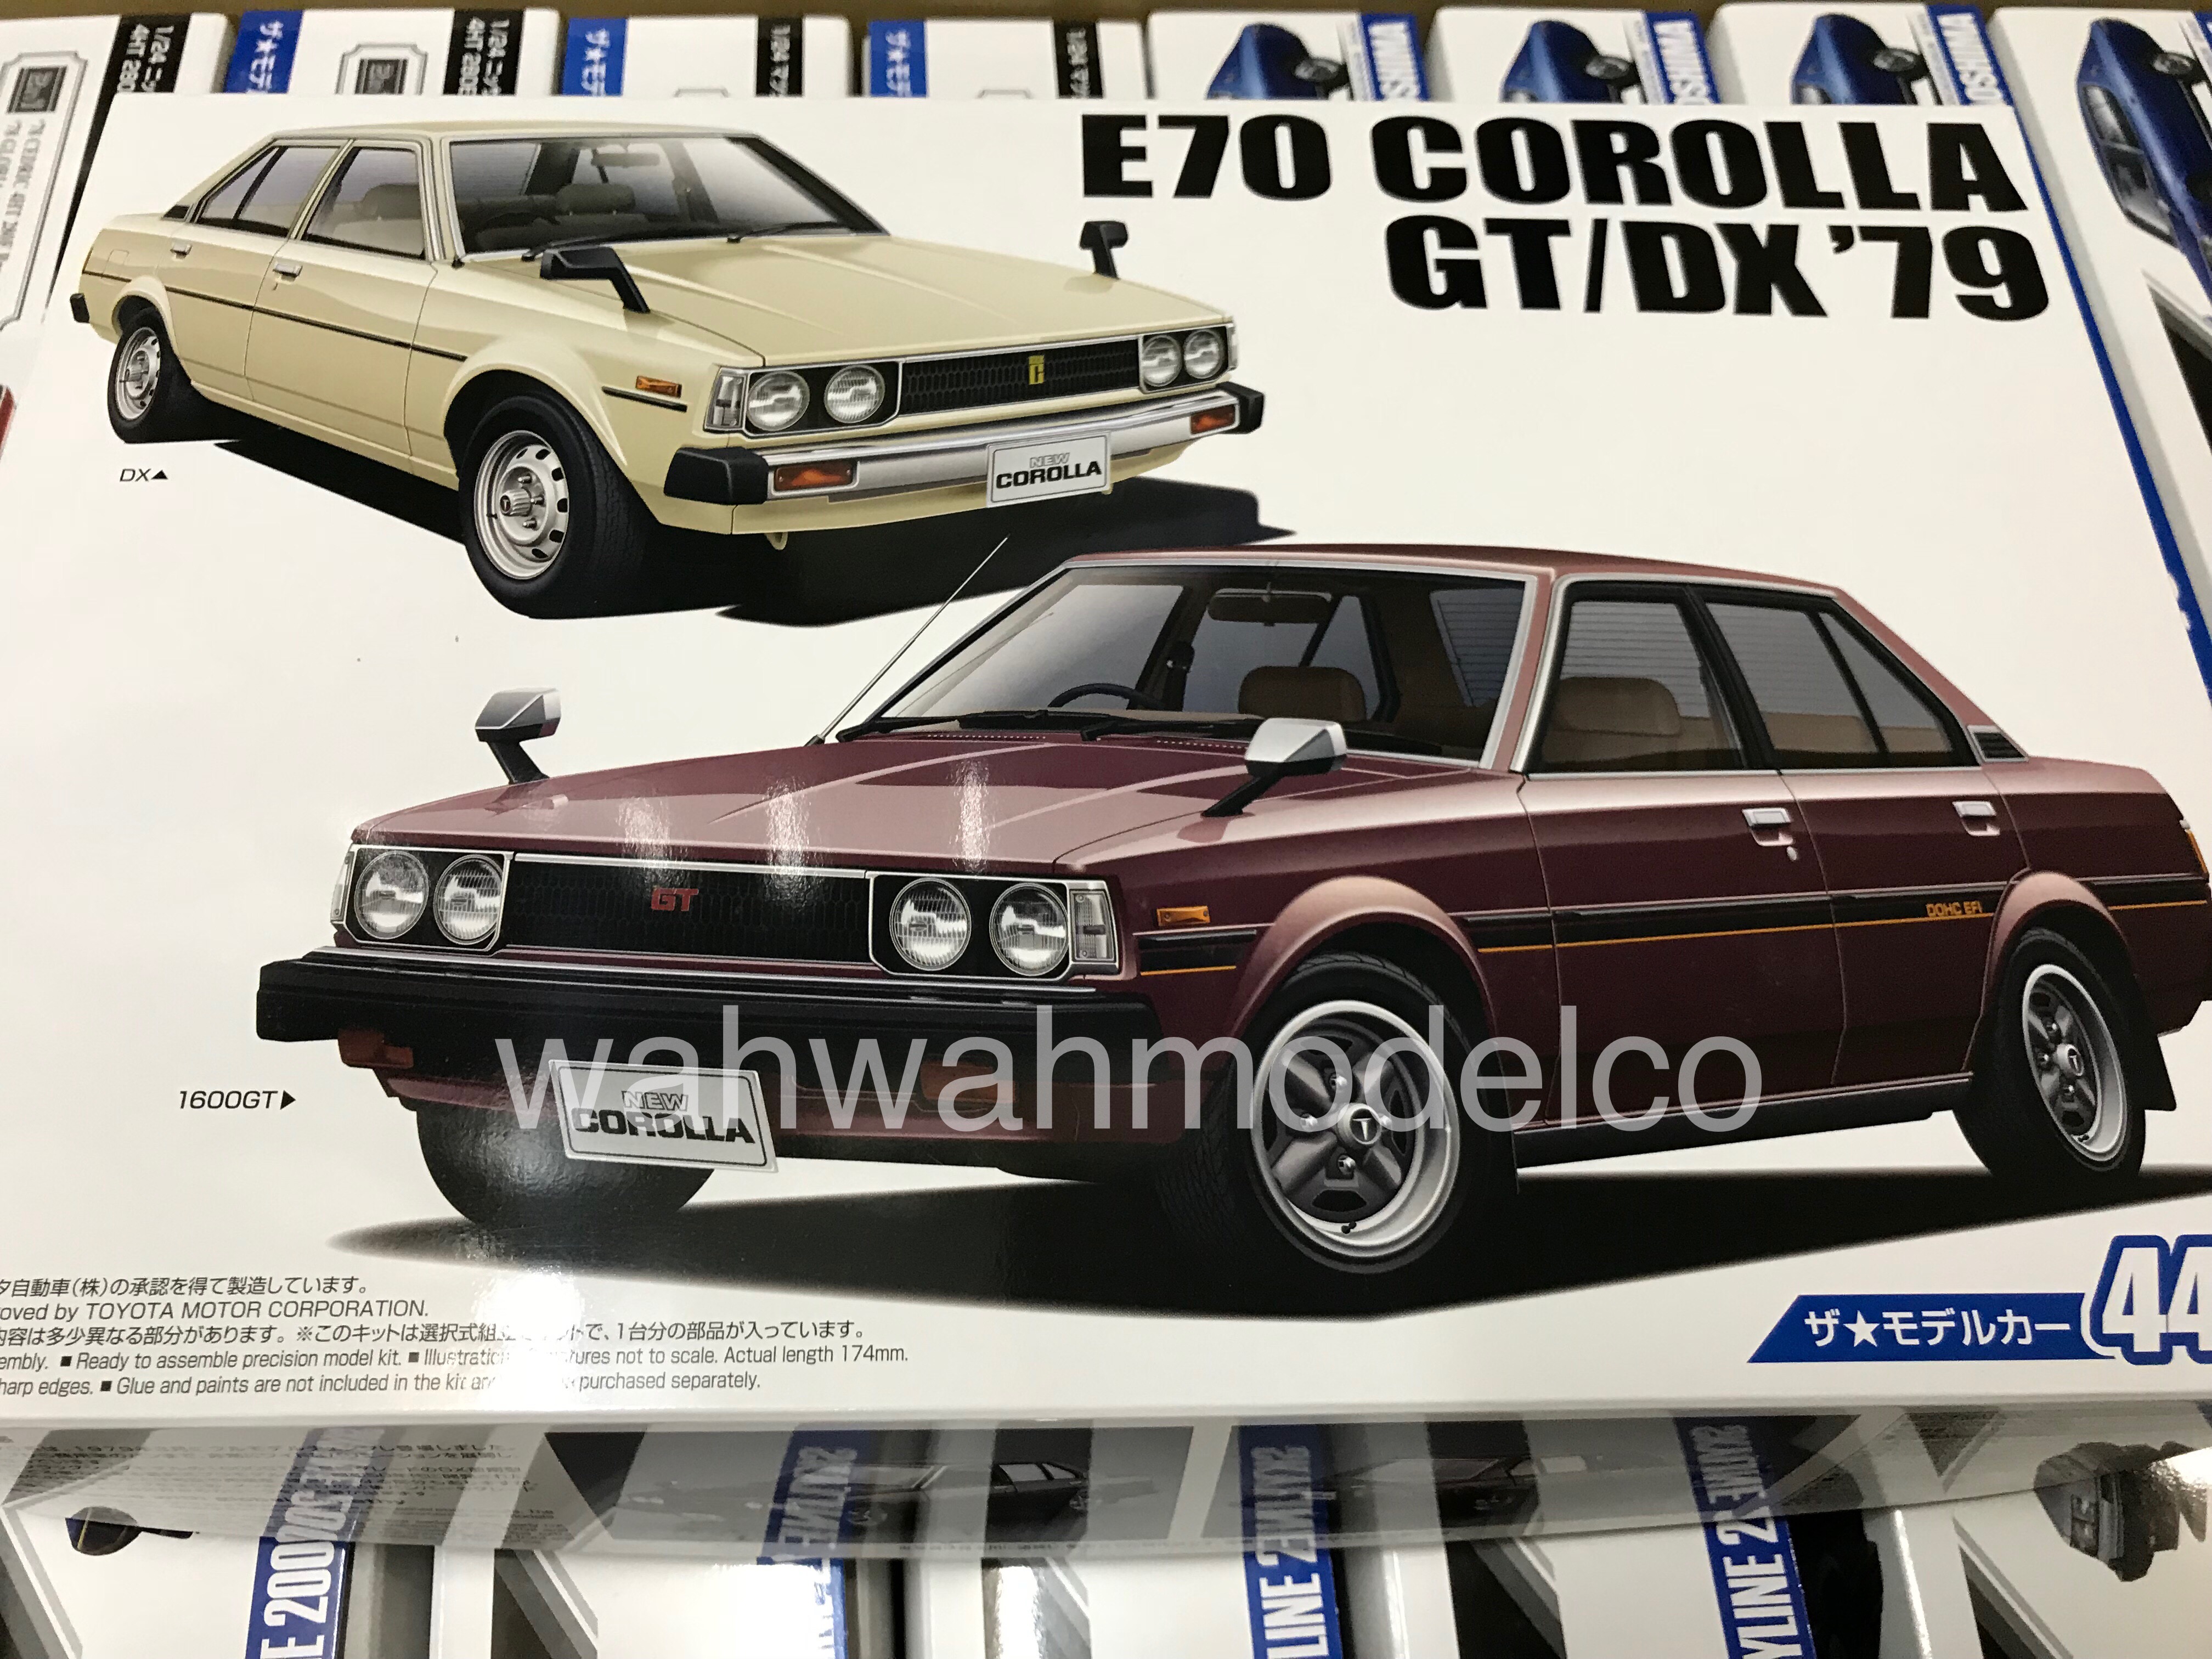 Aoshima 1/24 No.44 Toyota E70 Corolla Sedan GT/DX '79 Plastic Car Model Kit 